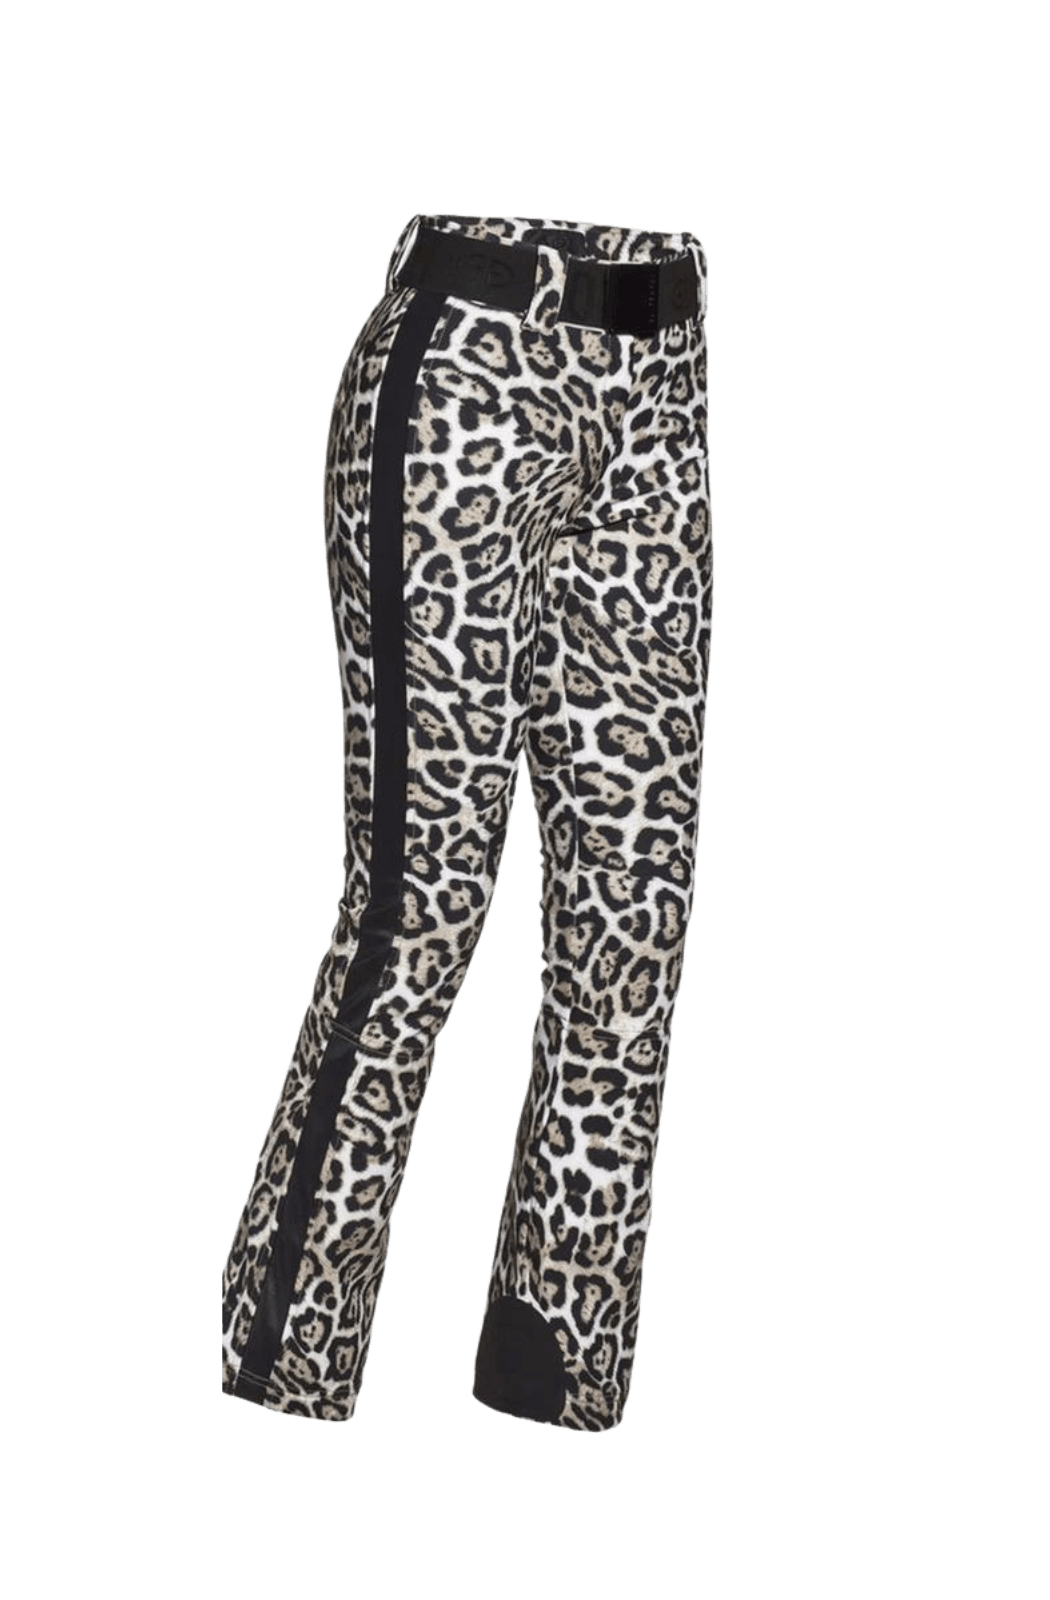 Leopard Roar Print Ski Trousers/Pants Side Image